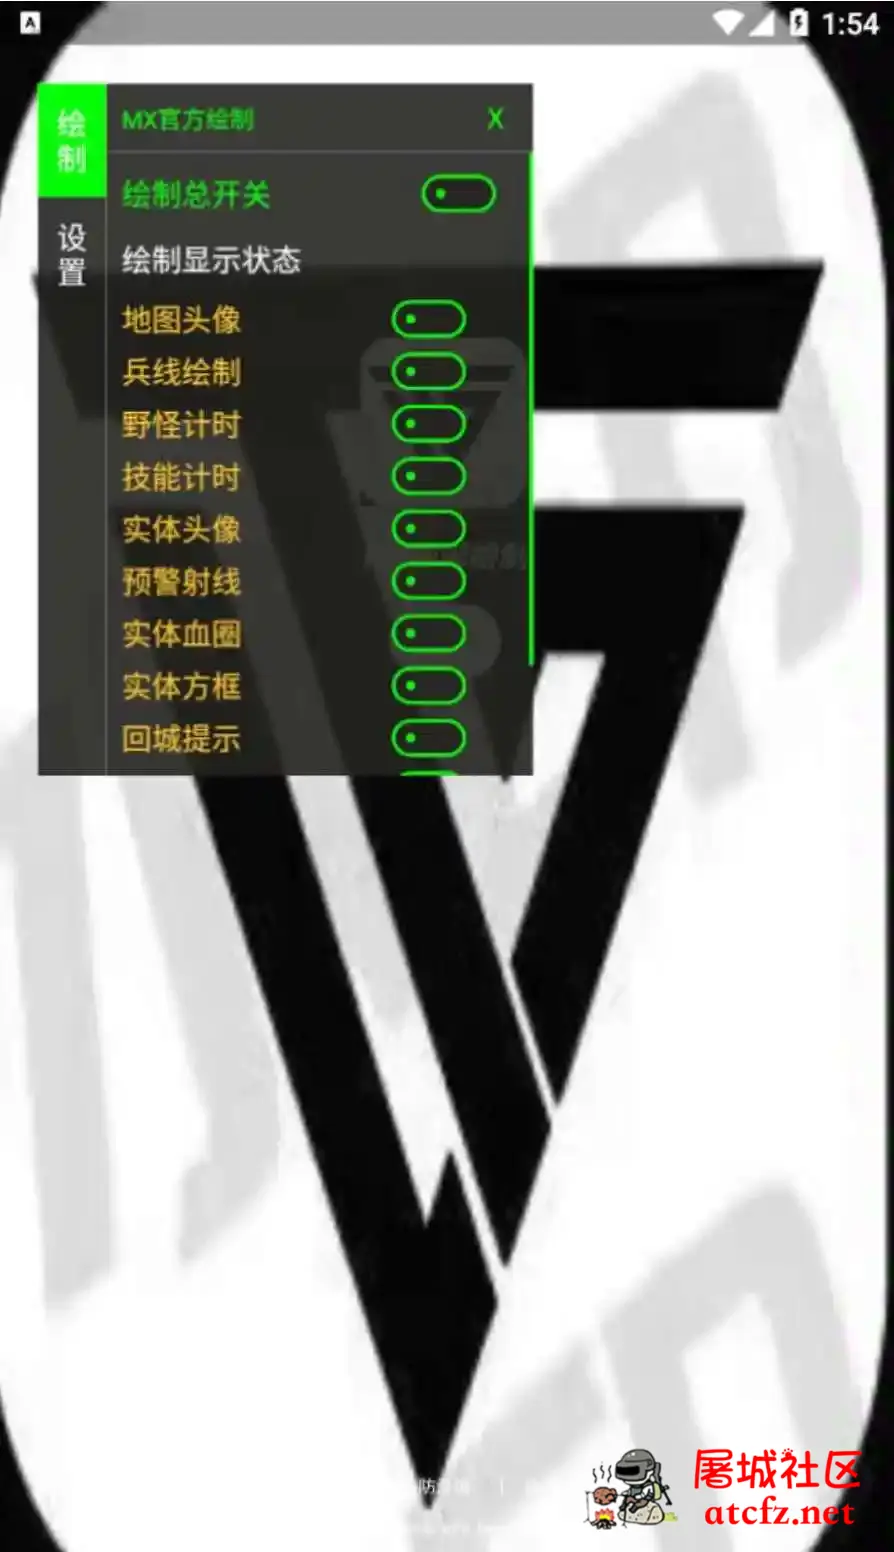 王者荣耀MX绘制透视CD野怪计时插件破解版 屠城辅助网www.tcfz1.com5447